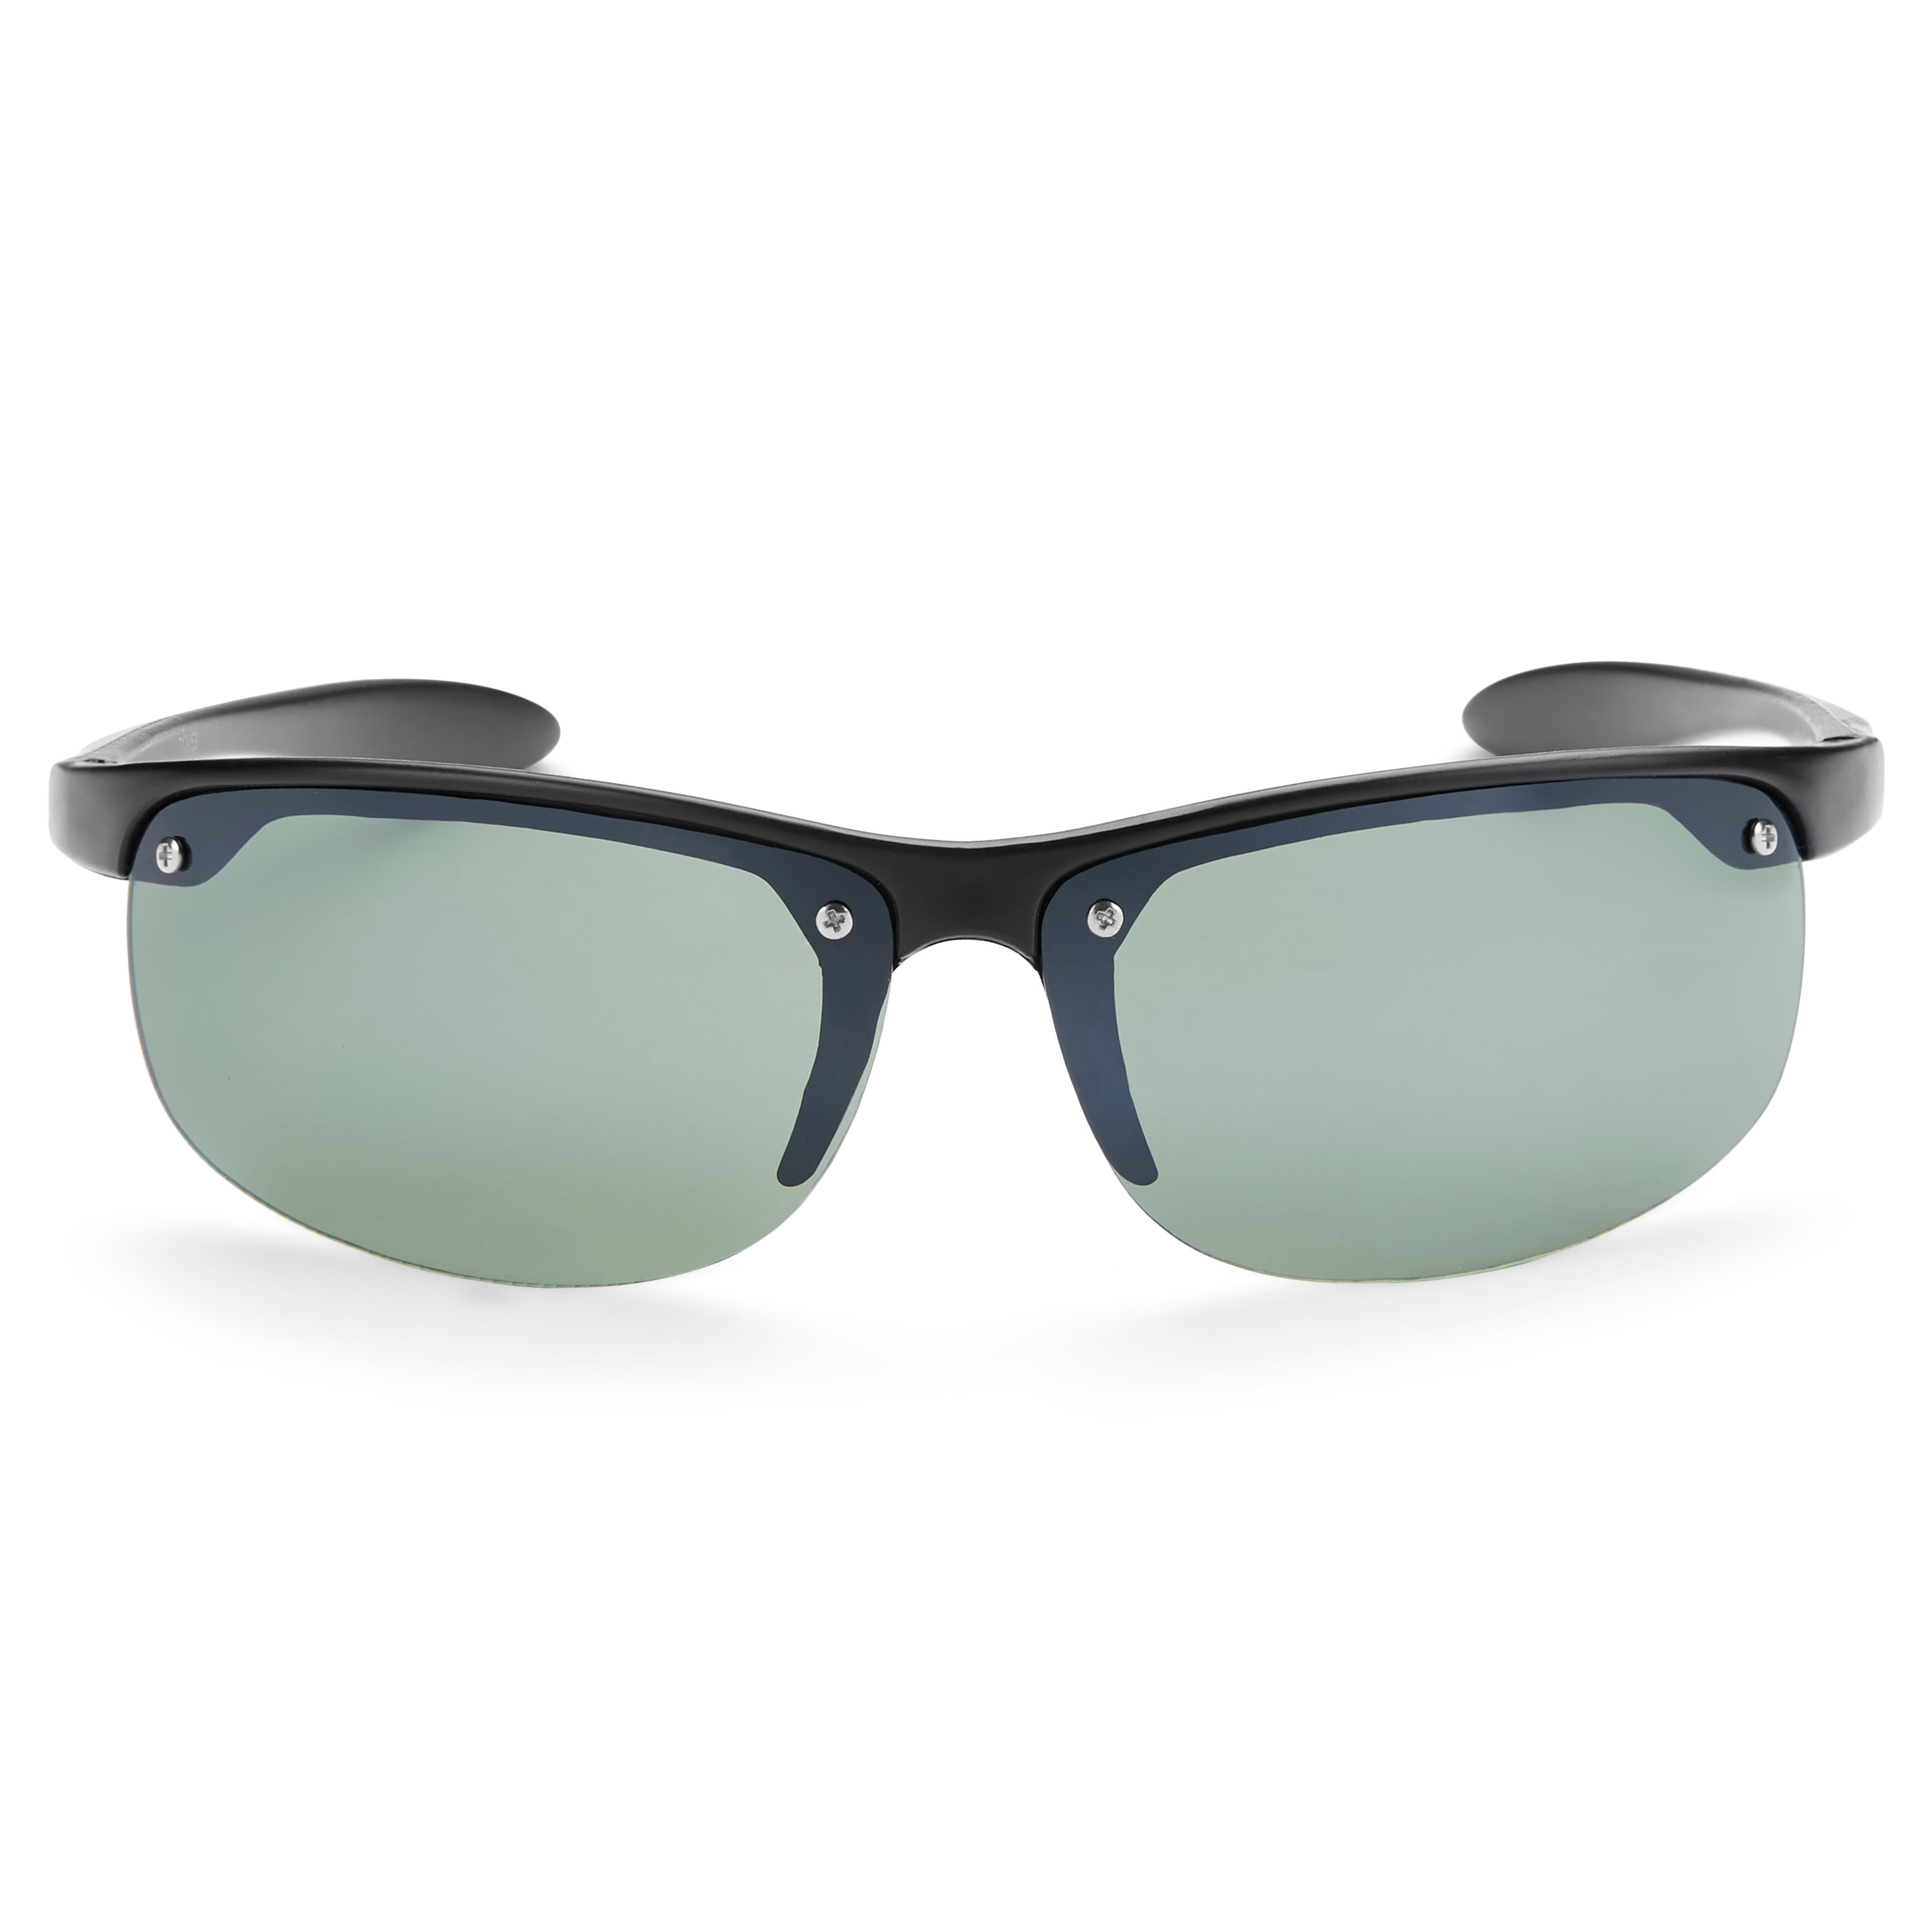 Černé a zelené sportovní brýle Wraparound